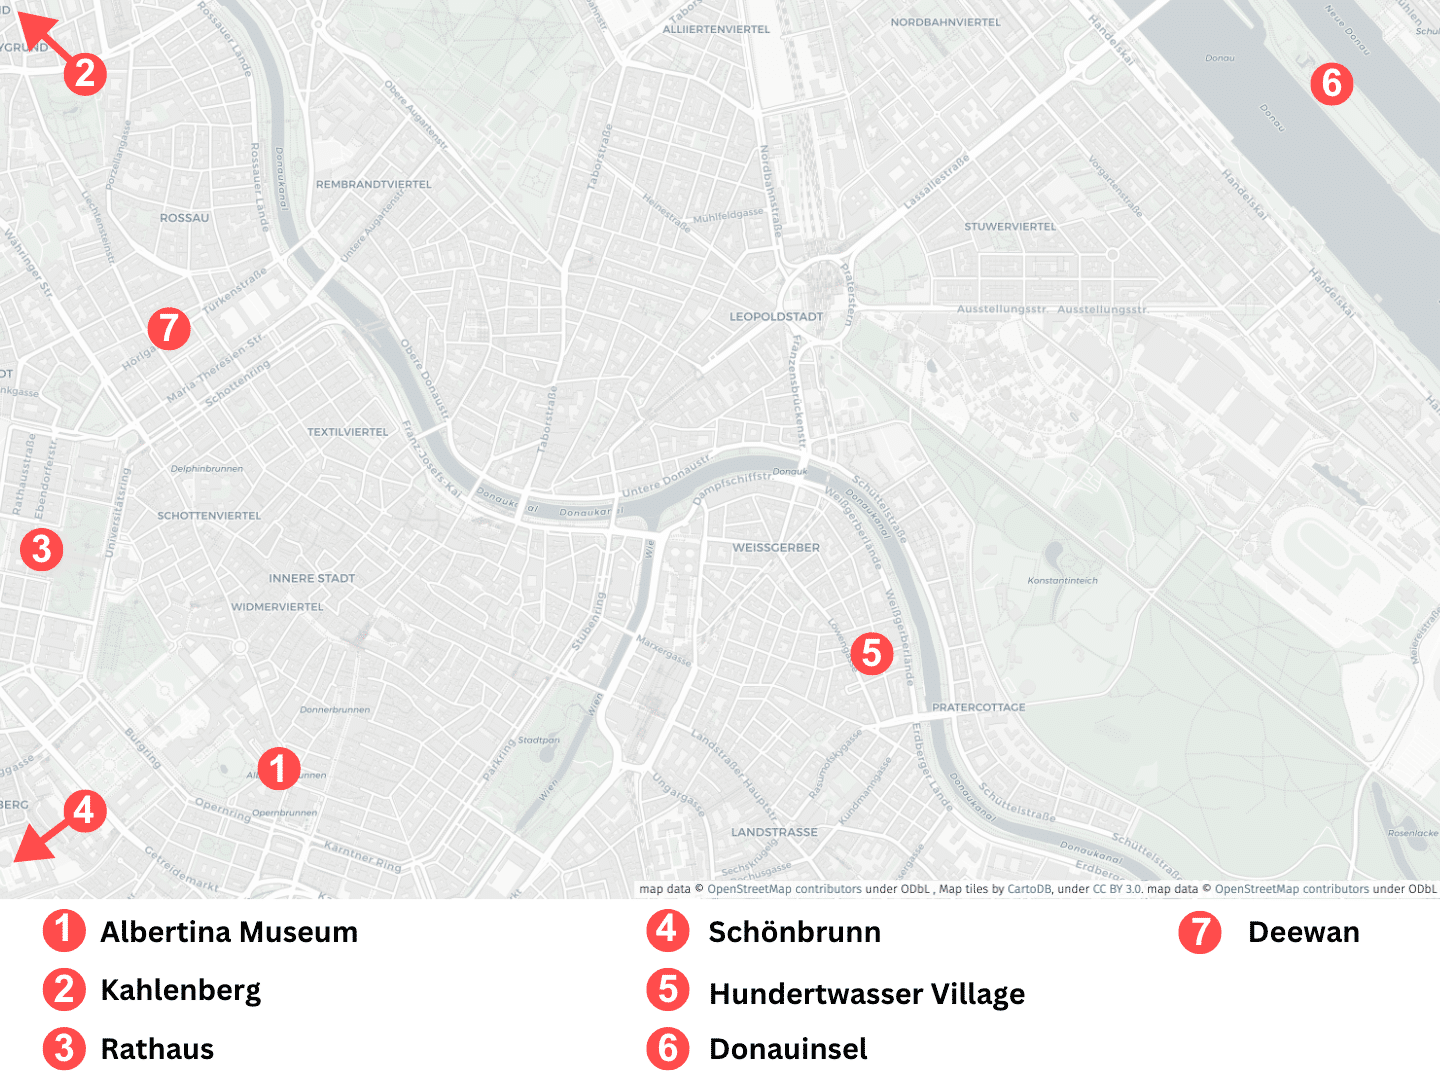 Karte von Wien in Österreich mit Markierungen der einzelnen Wien Tipps.